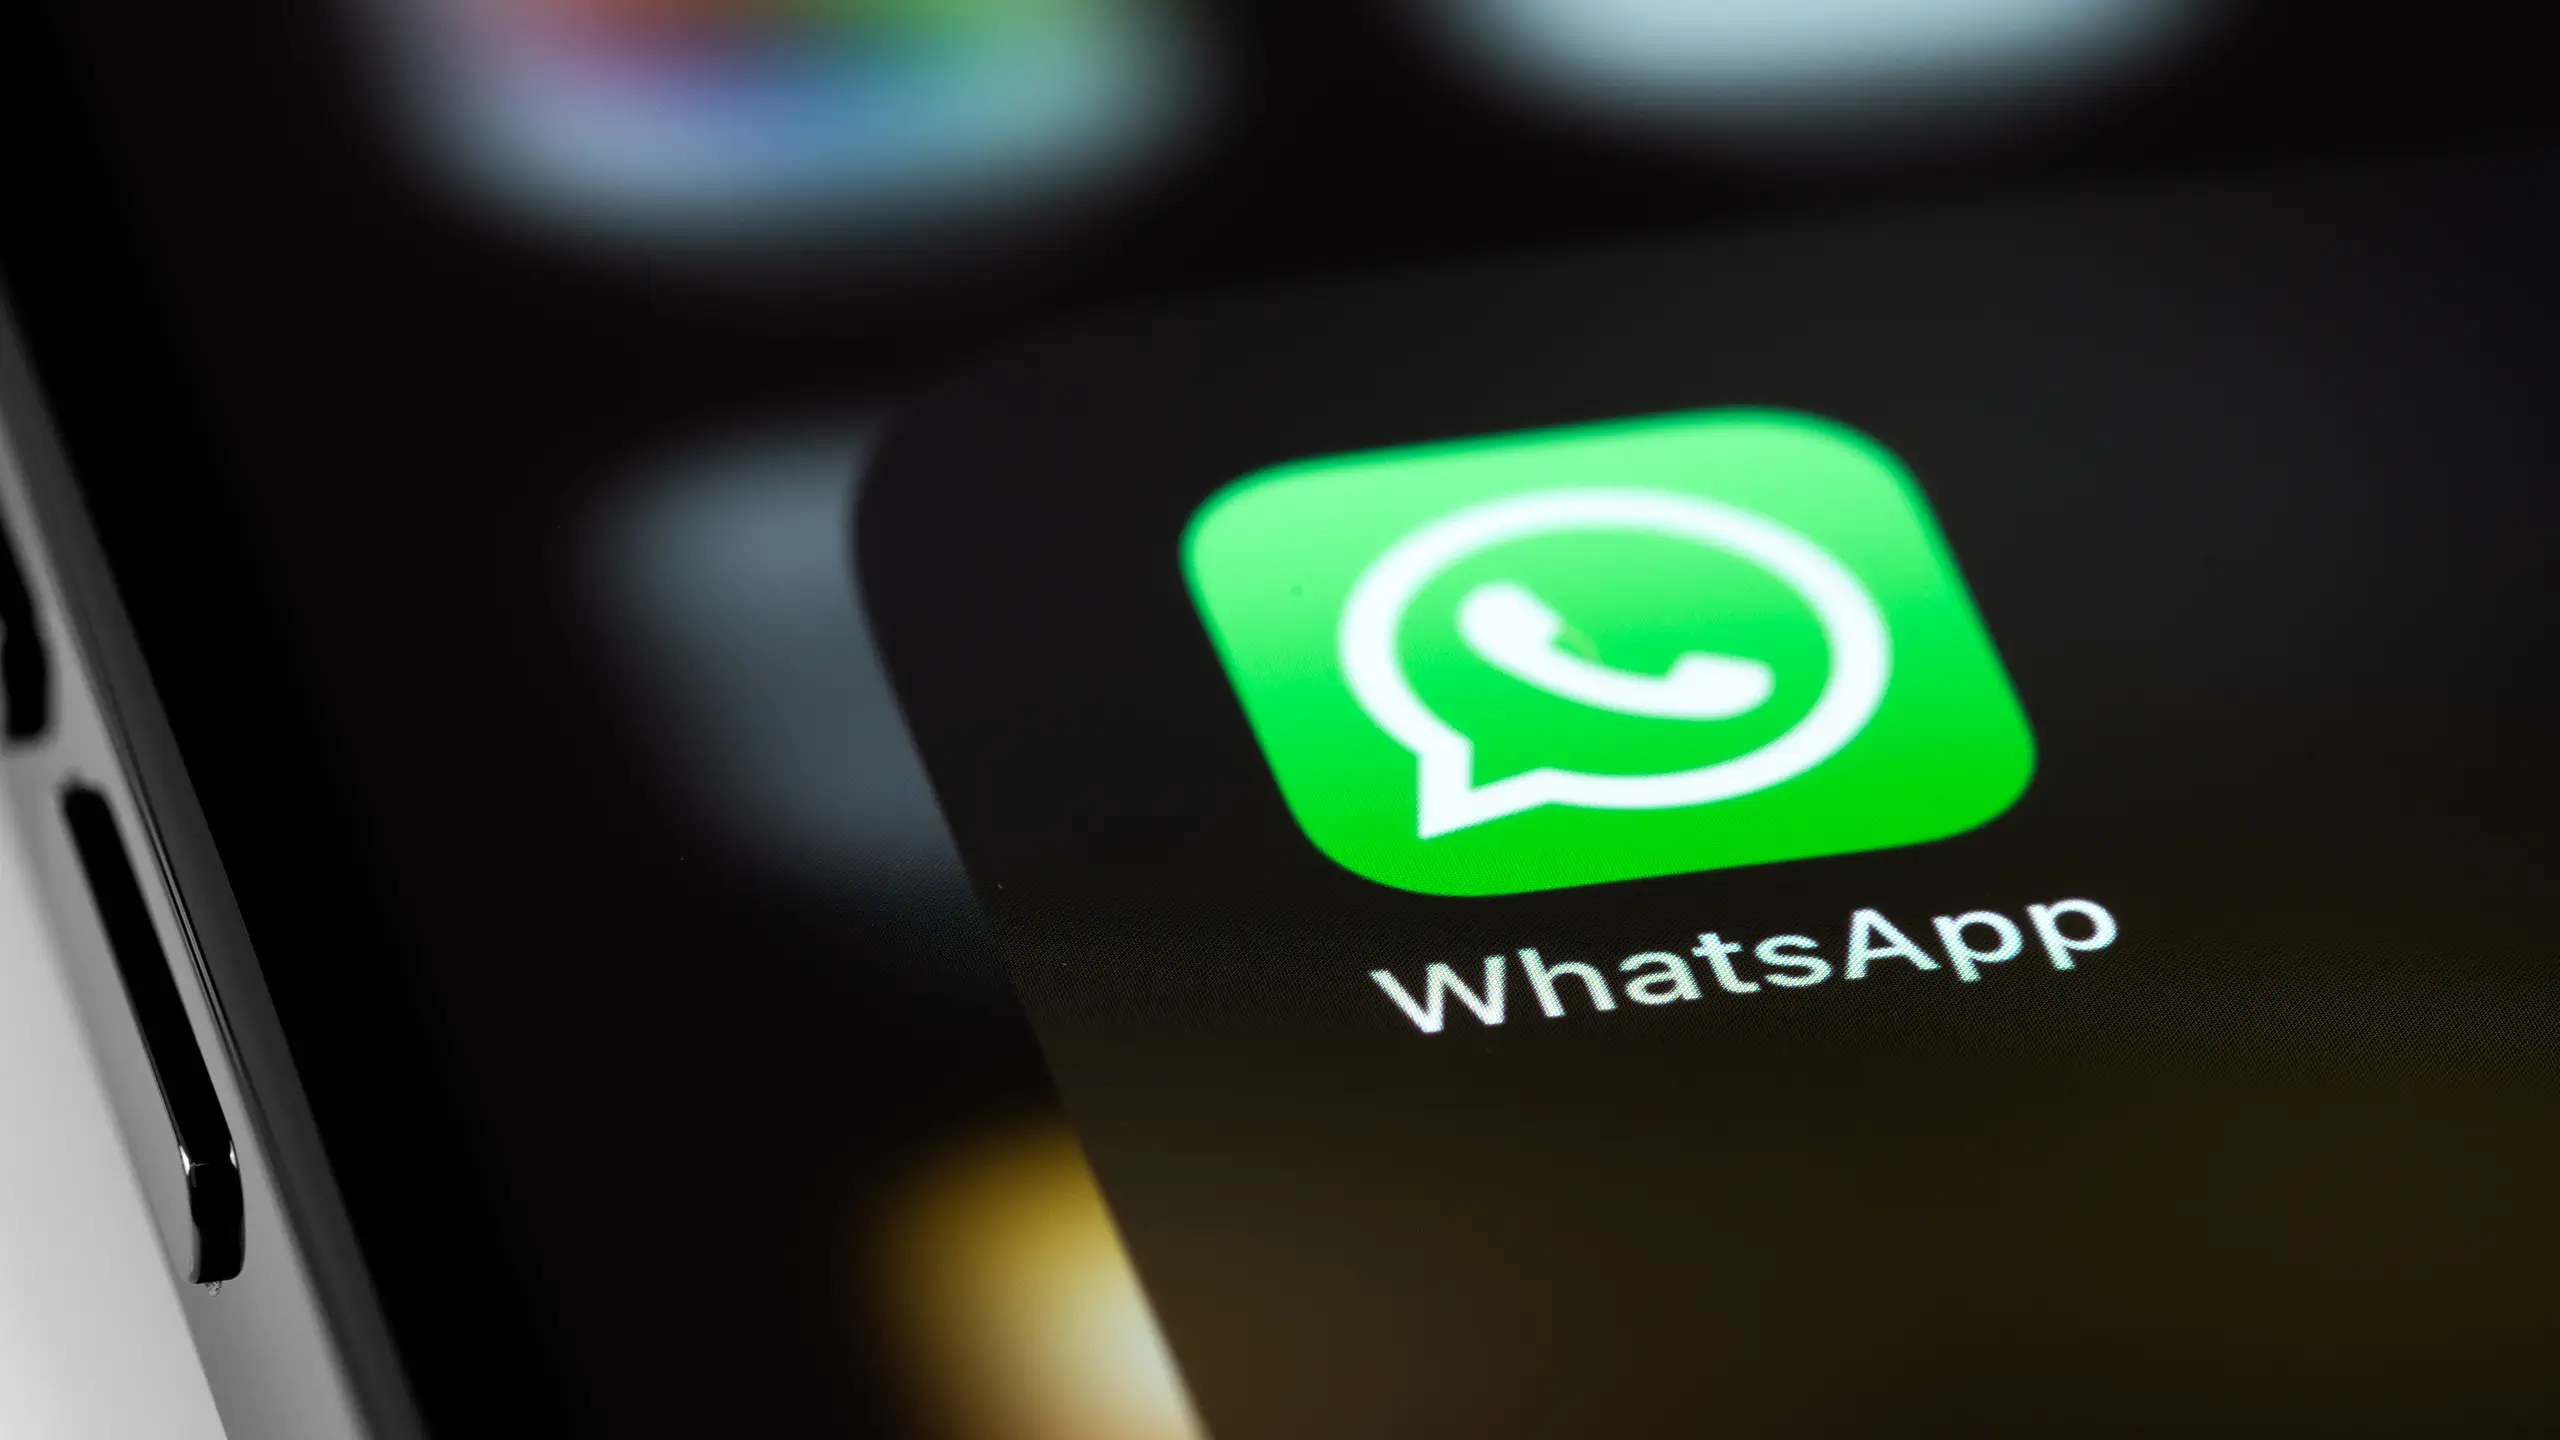 WhatsApp: no Brasil: uma visão sobre o app